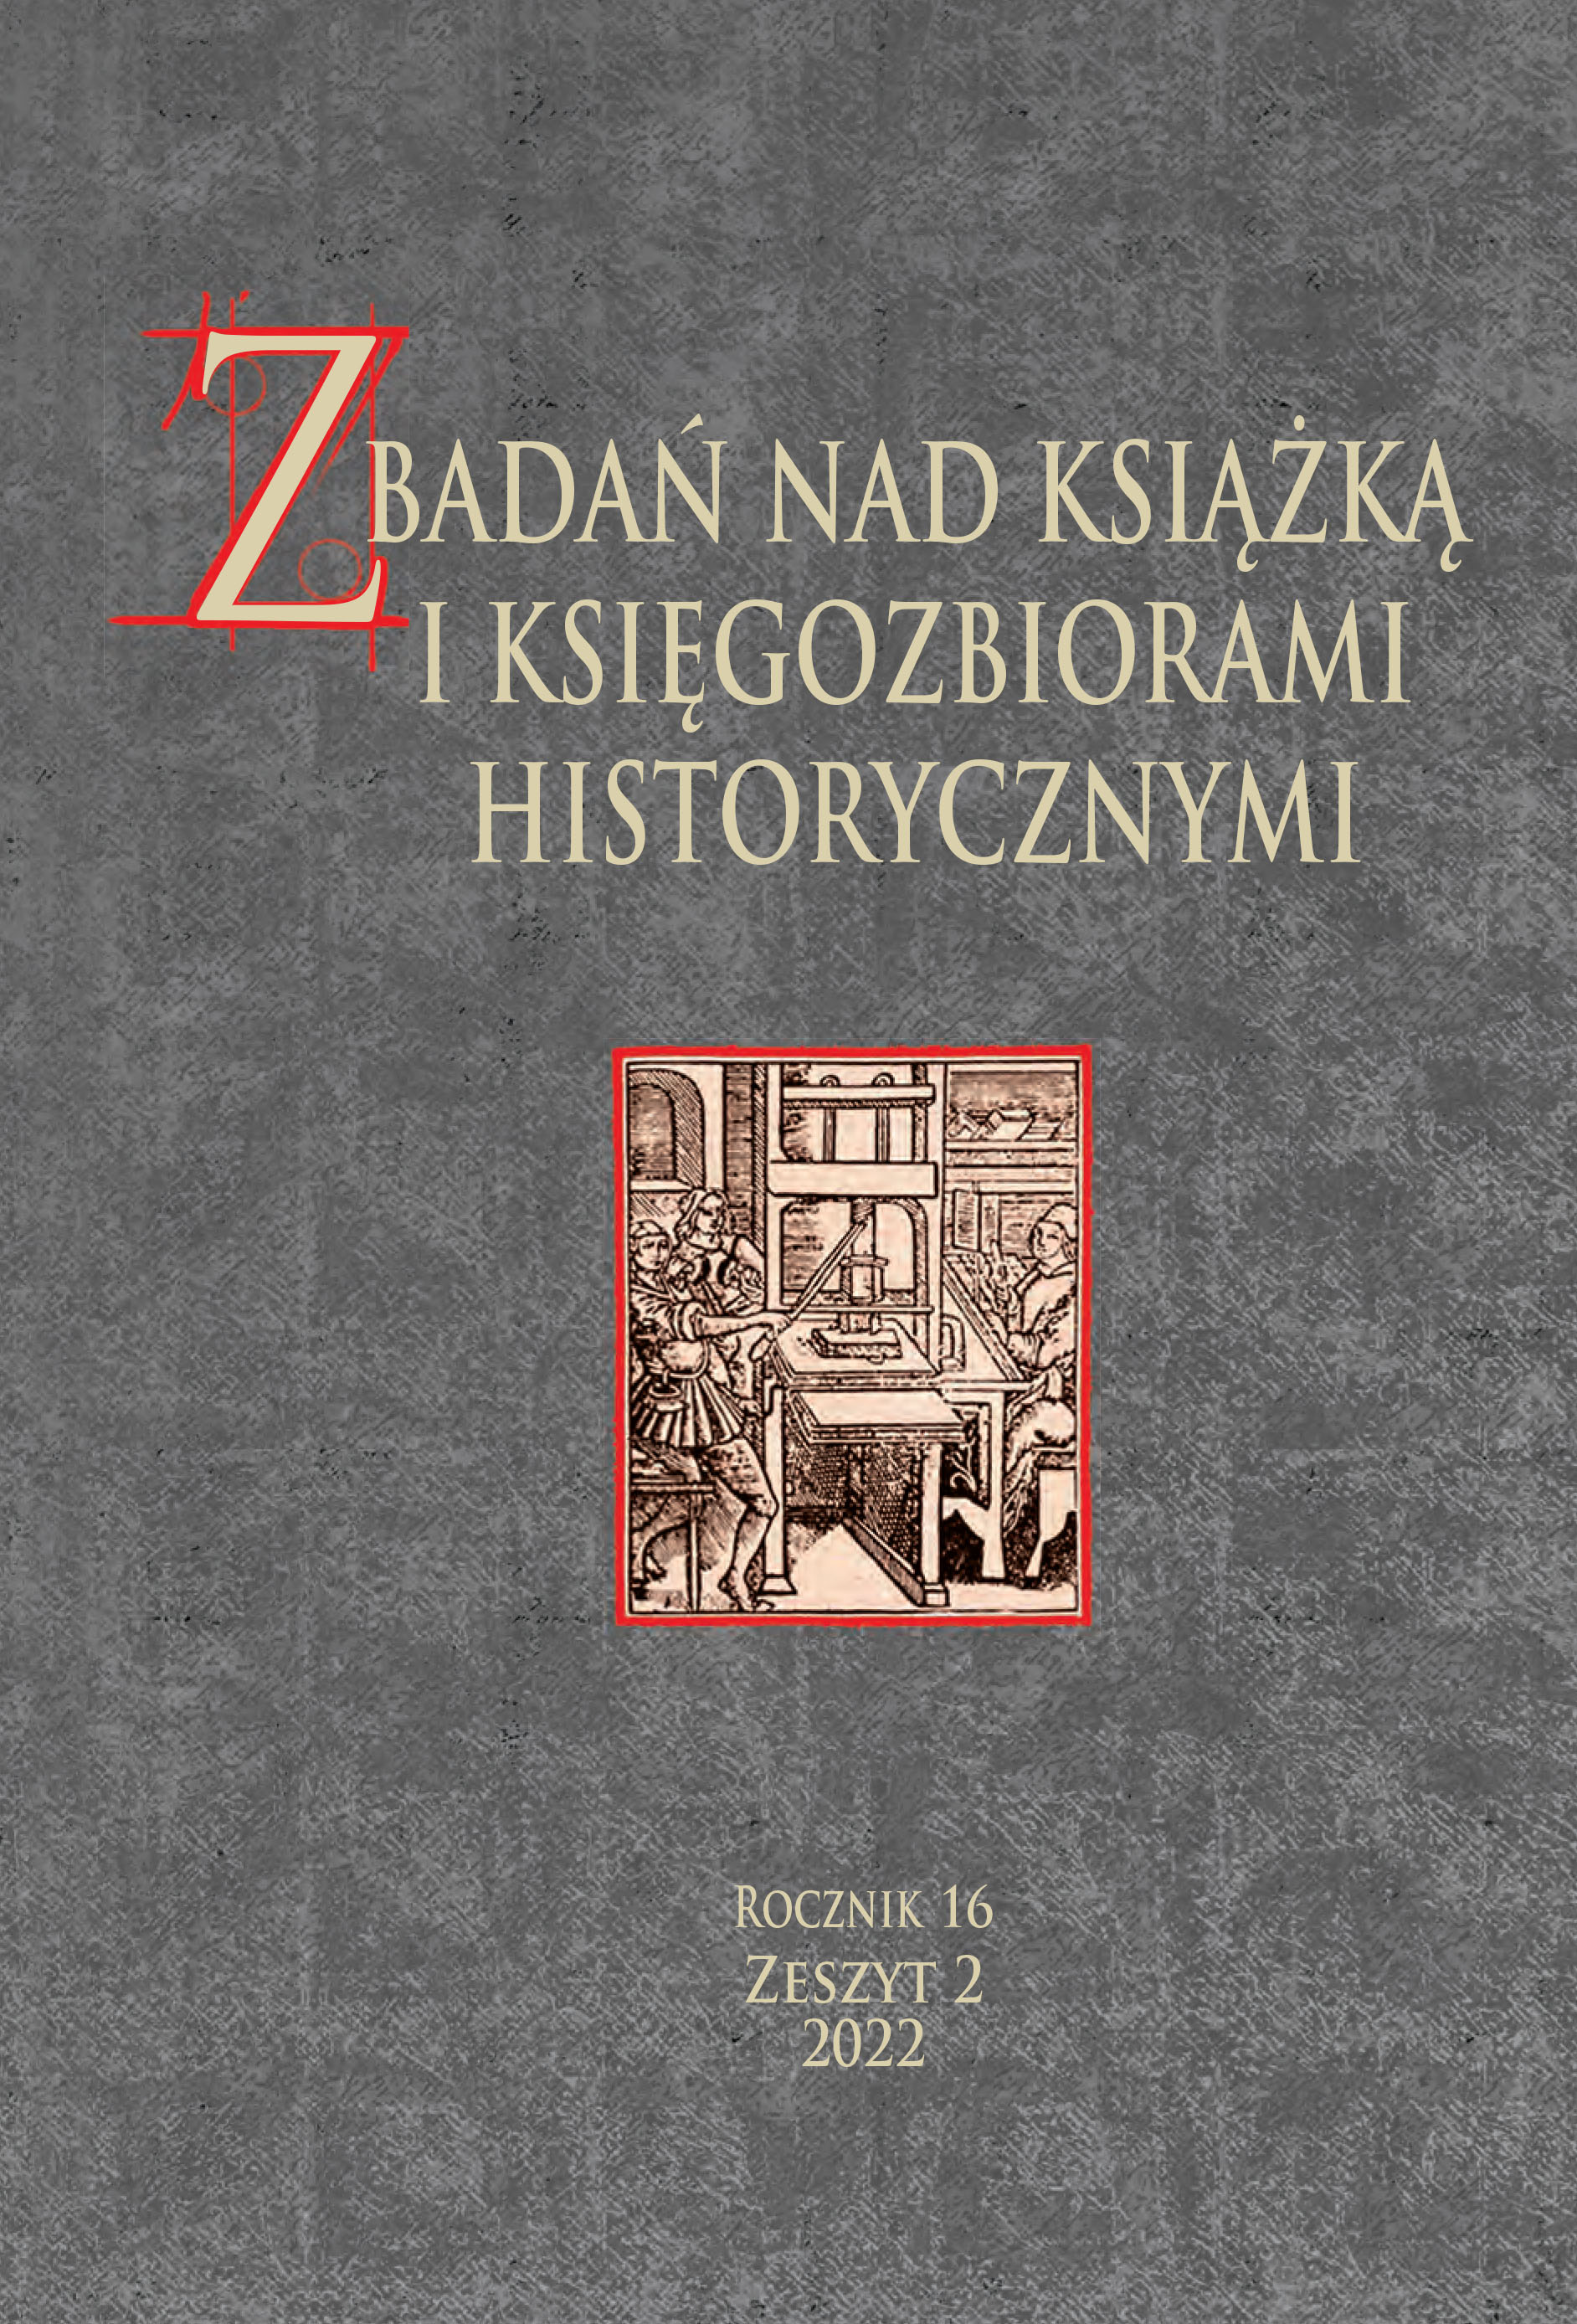 Ewangelia BJ 941 w kolekcji rękopisów Biblioteki Jagiellońskiej: społeczna historia kodeksu